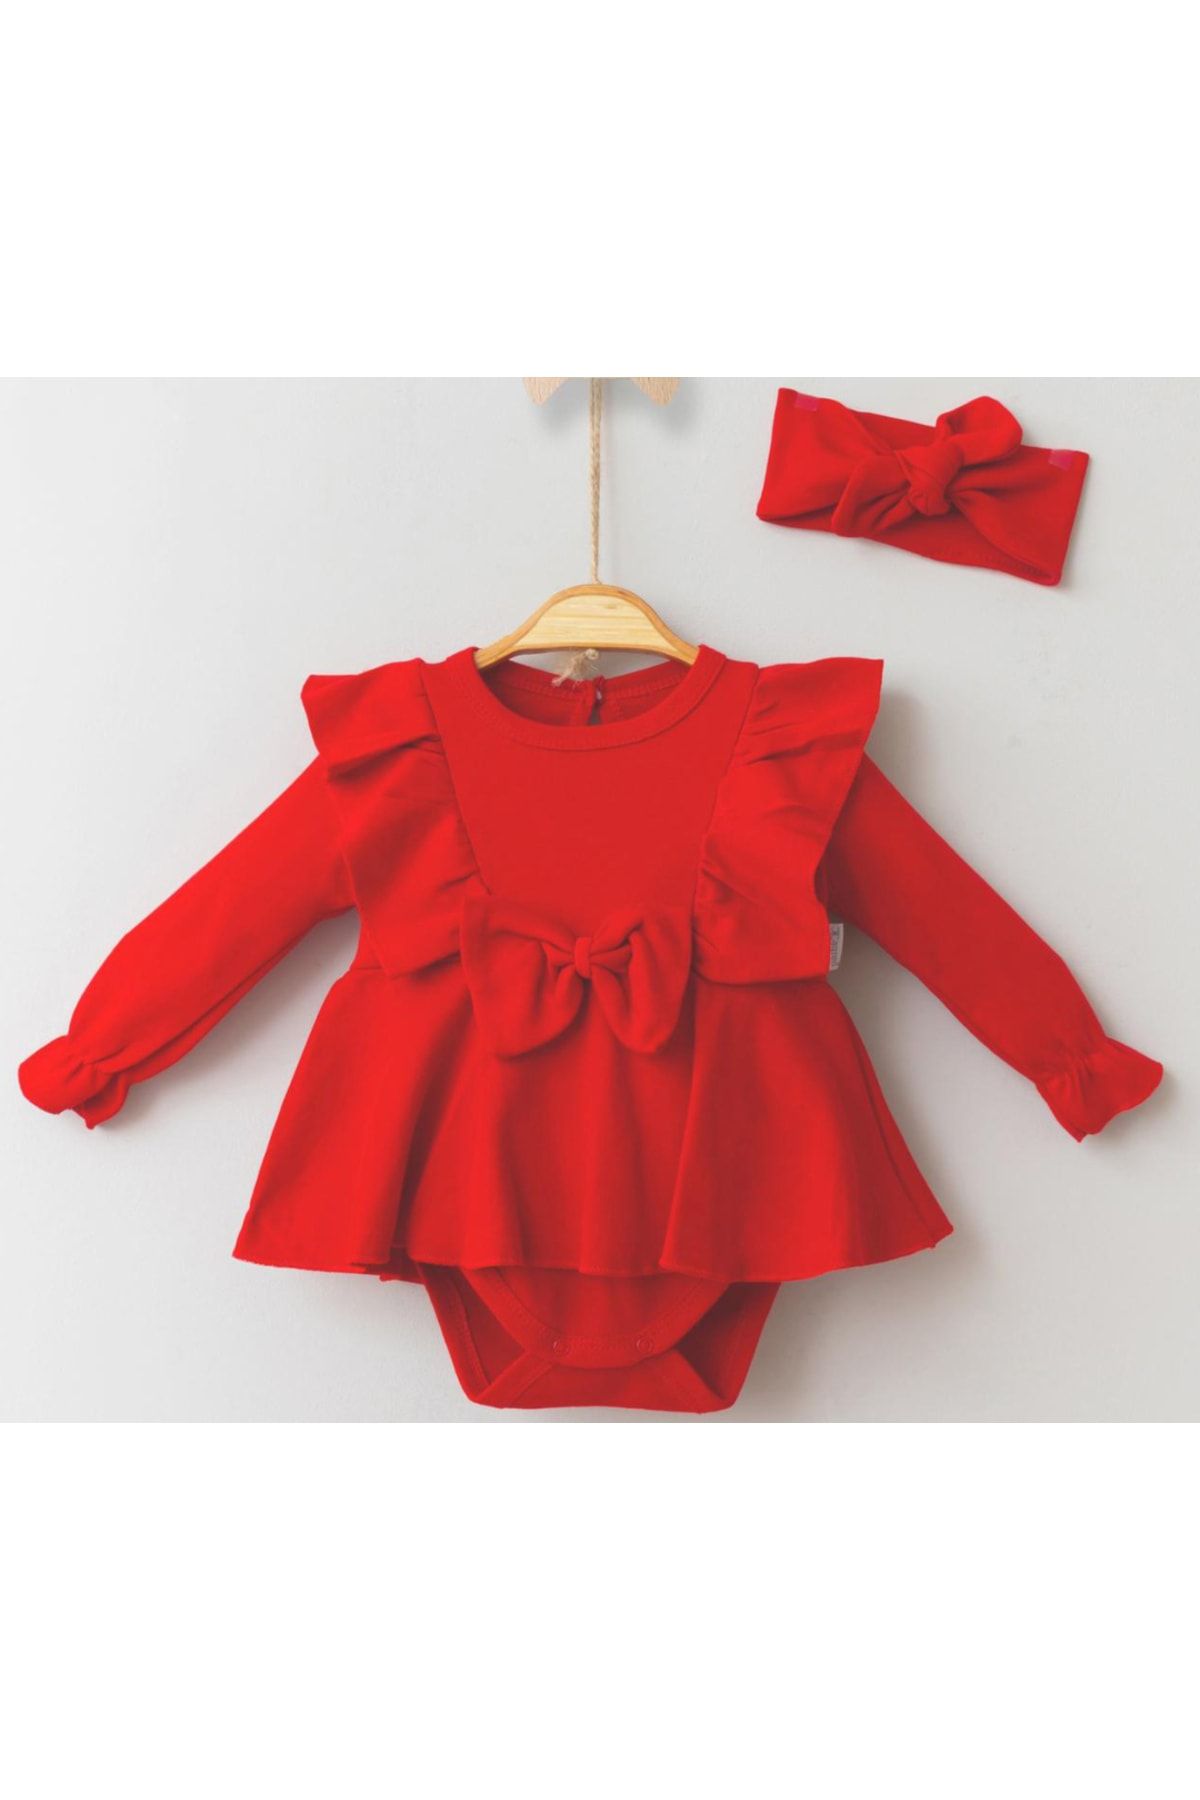 miniyou Kız Bebek Fiyonklu Romper Alttan Çıtçıtlı Bandanalı Elbise My-1041mc